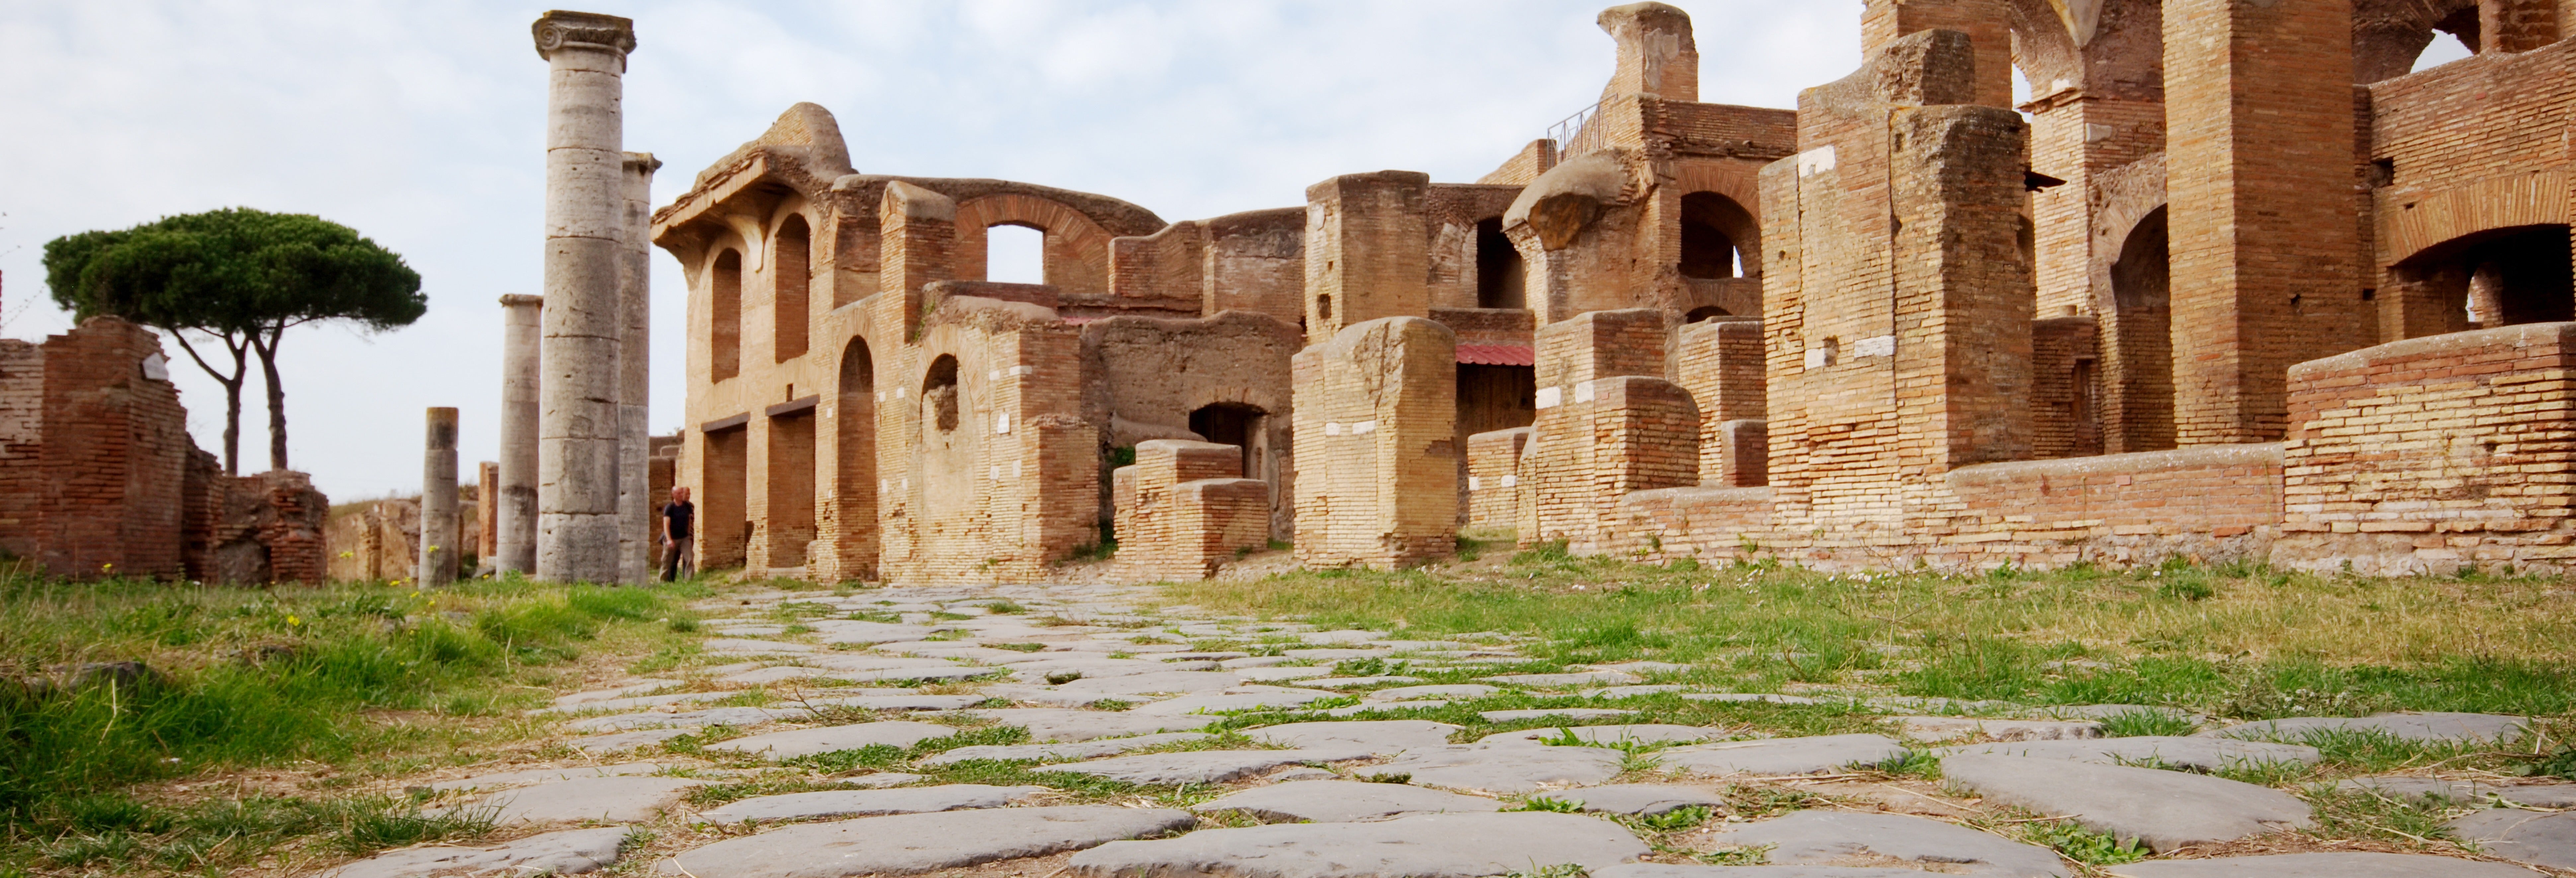 Excursão a Ostia Antica